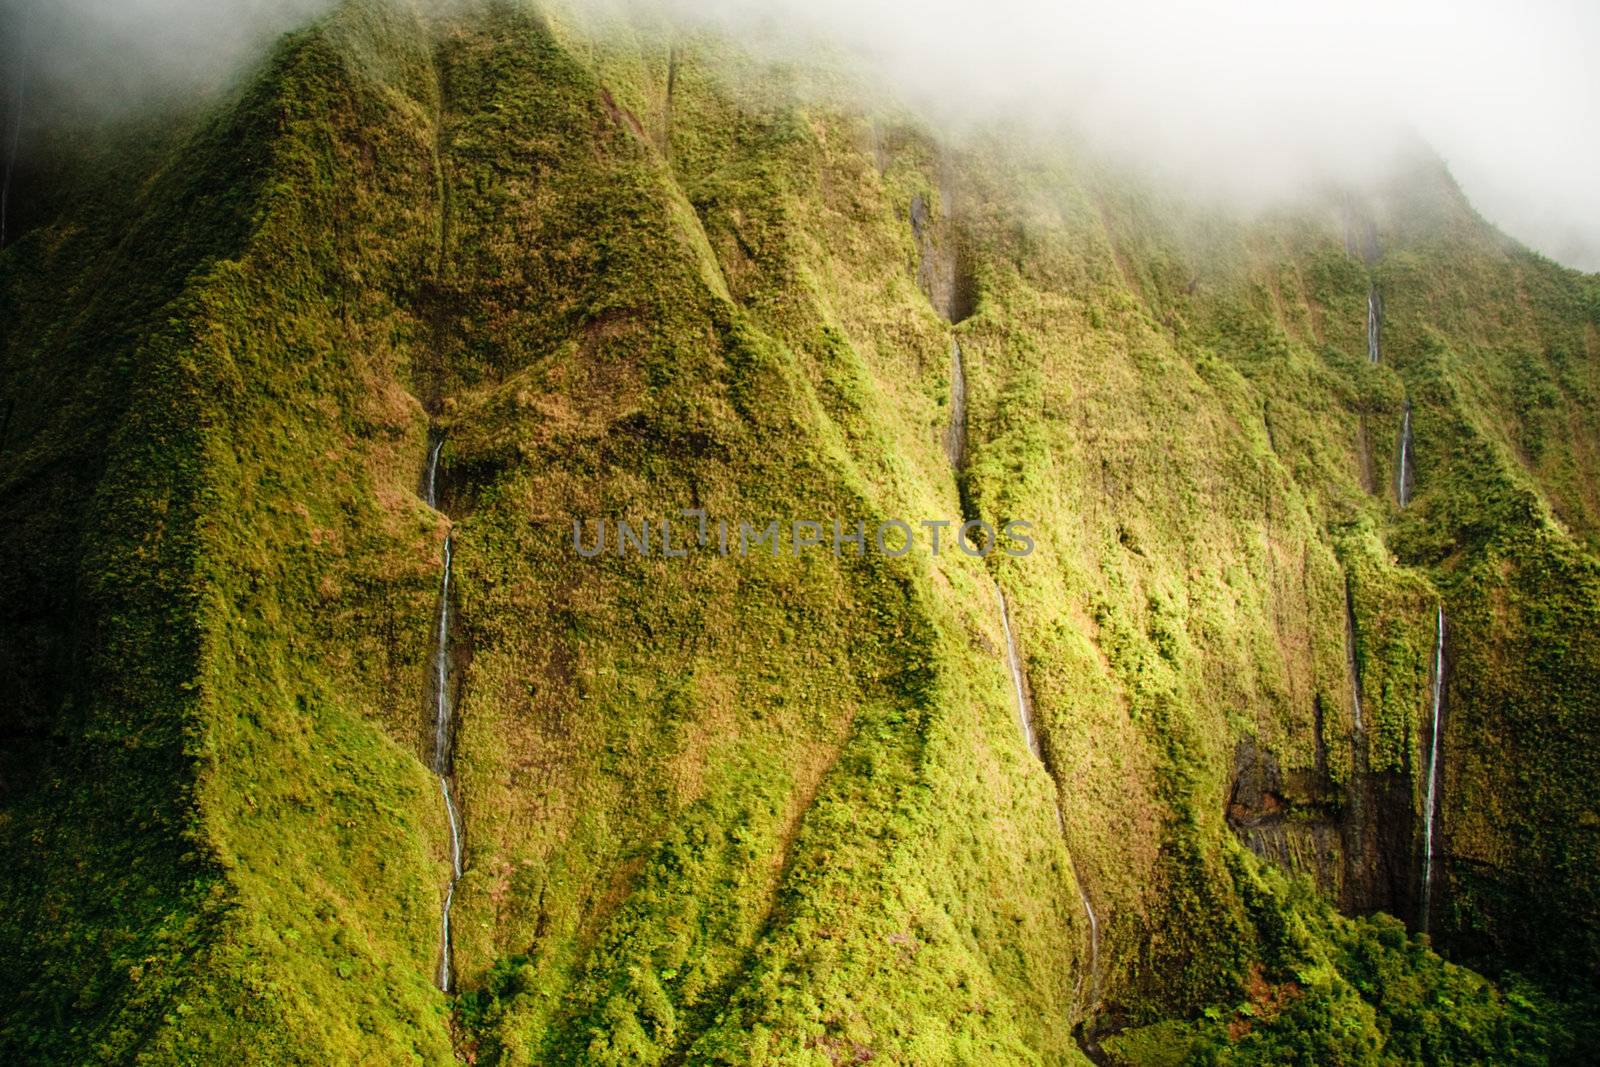 Kauai Mt. Waialeale waterfalls in rain by steheap